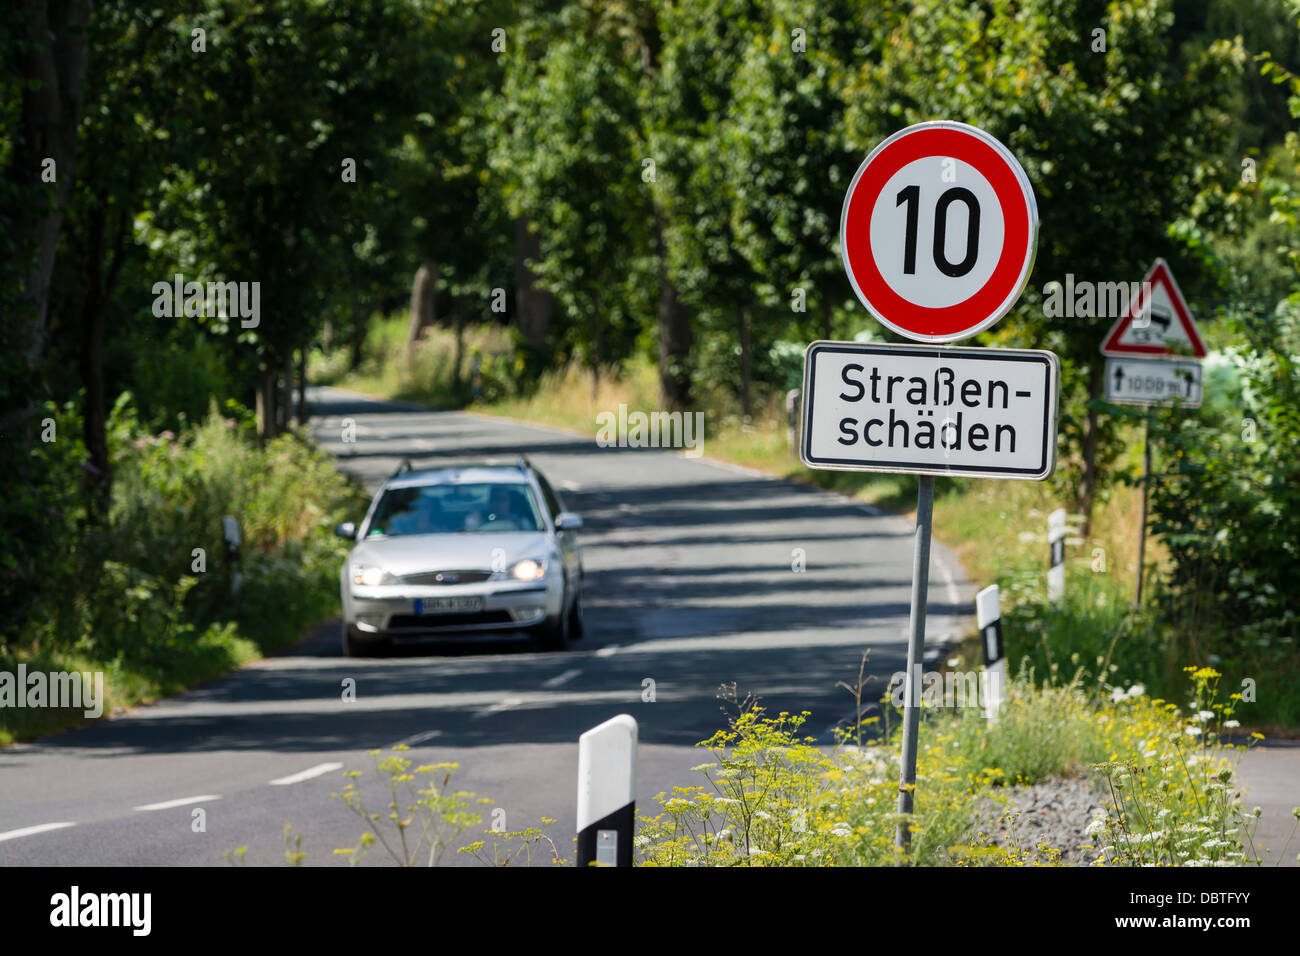 Ein Auto fährt auf der L657 Straße zwischen Dortmund-Mengede und Castrop-Rauxel. An Fahrbahn Schaden liegt die Höchstgeschwindigkeit 10 km/h Stockfoto